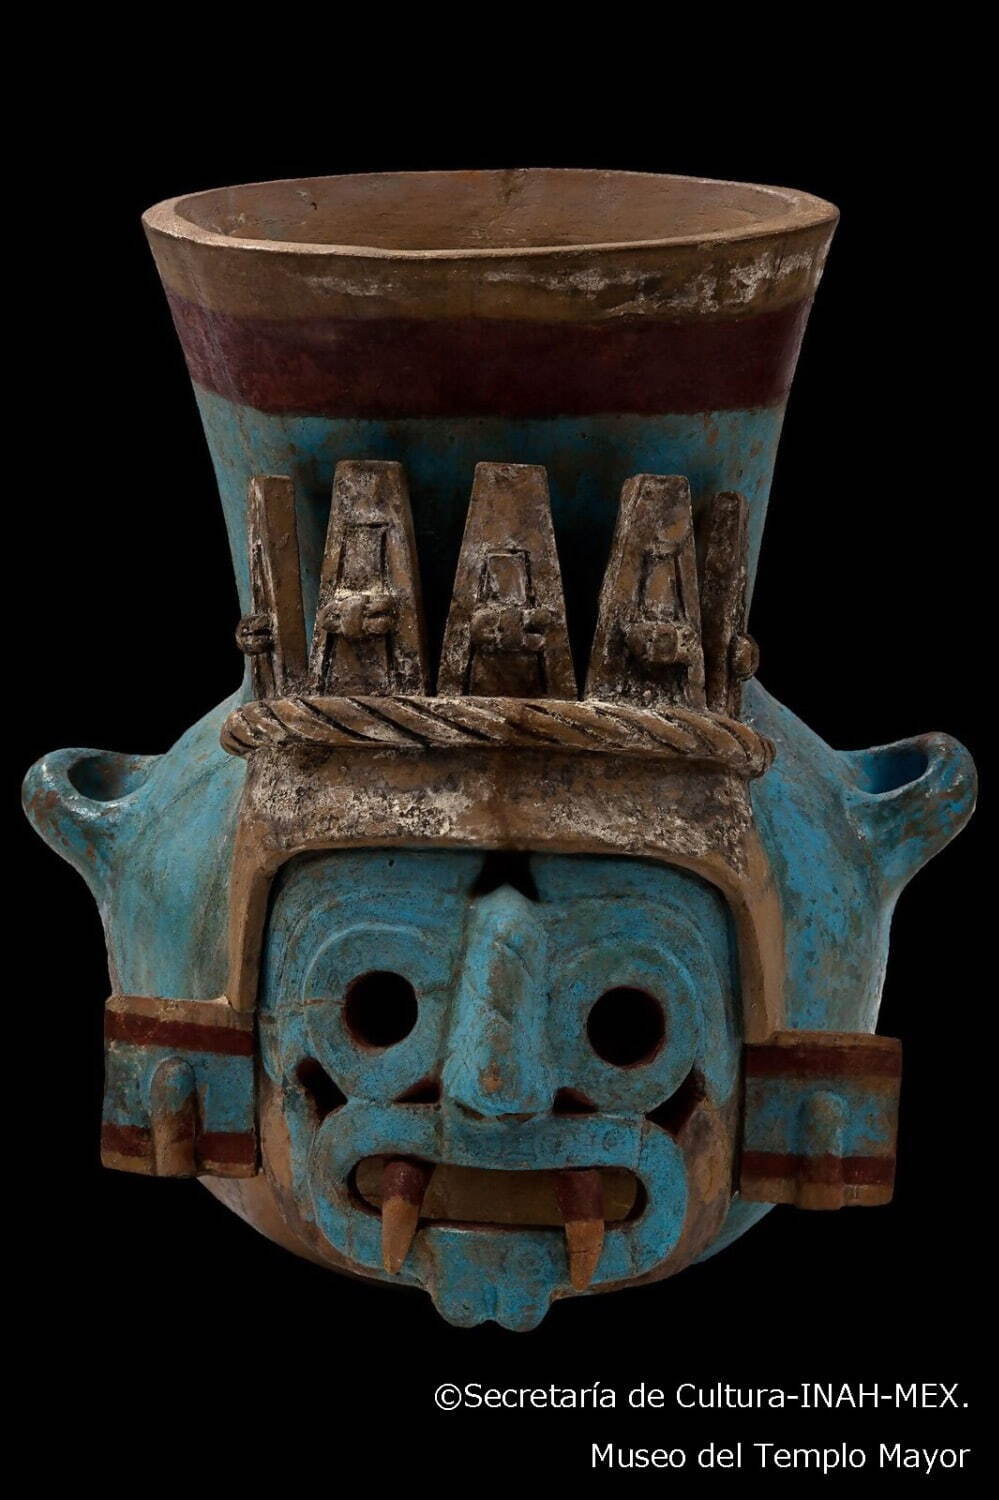 トラロク神の壺
アステカ文明 1440-69年 テンプロ・マヨール、埋納石室56出土
テンプロ・マヨール博物館蔵